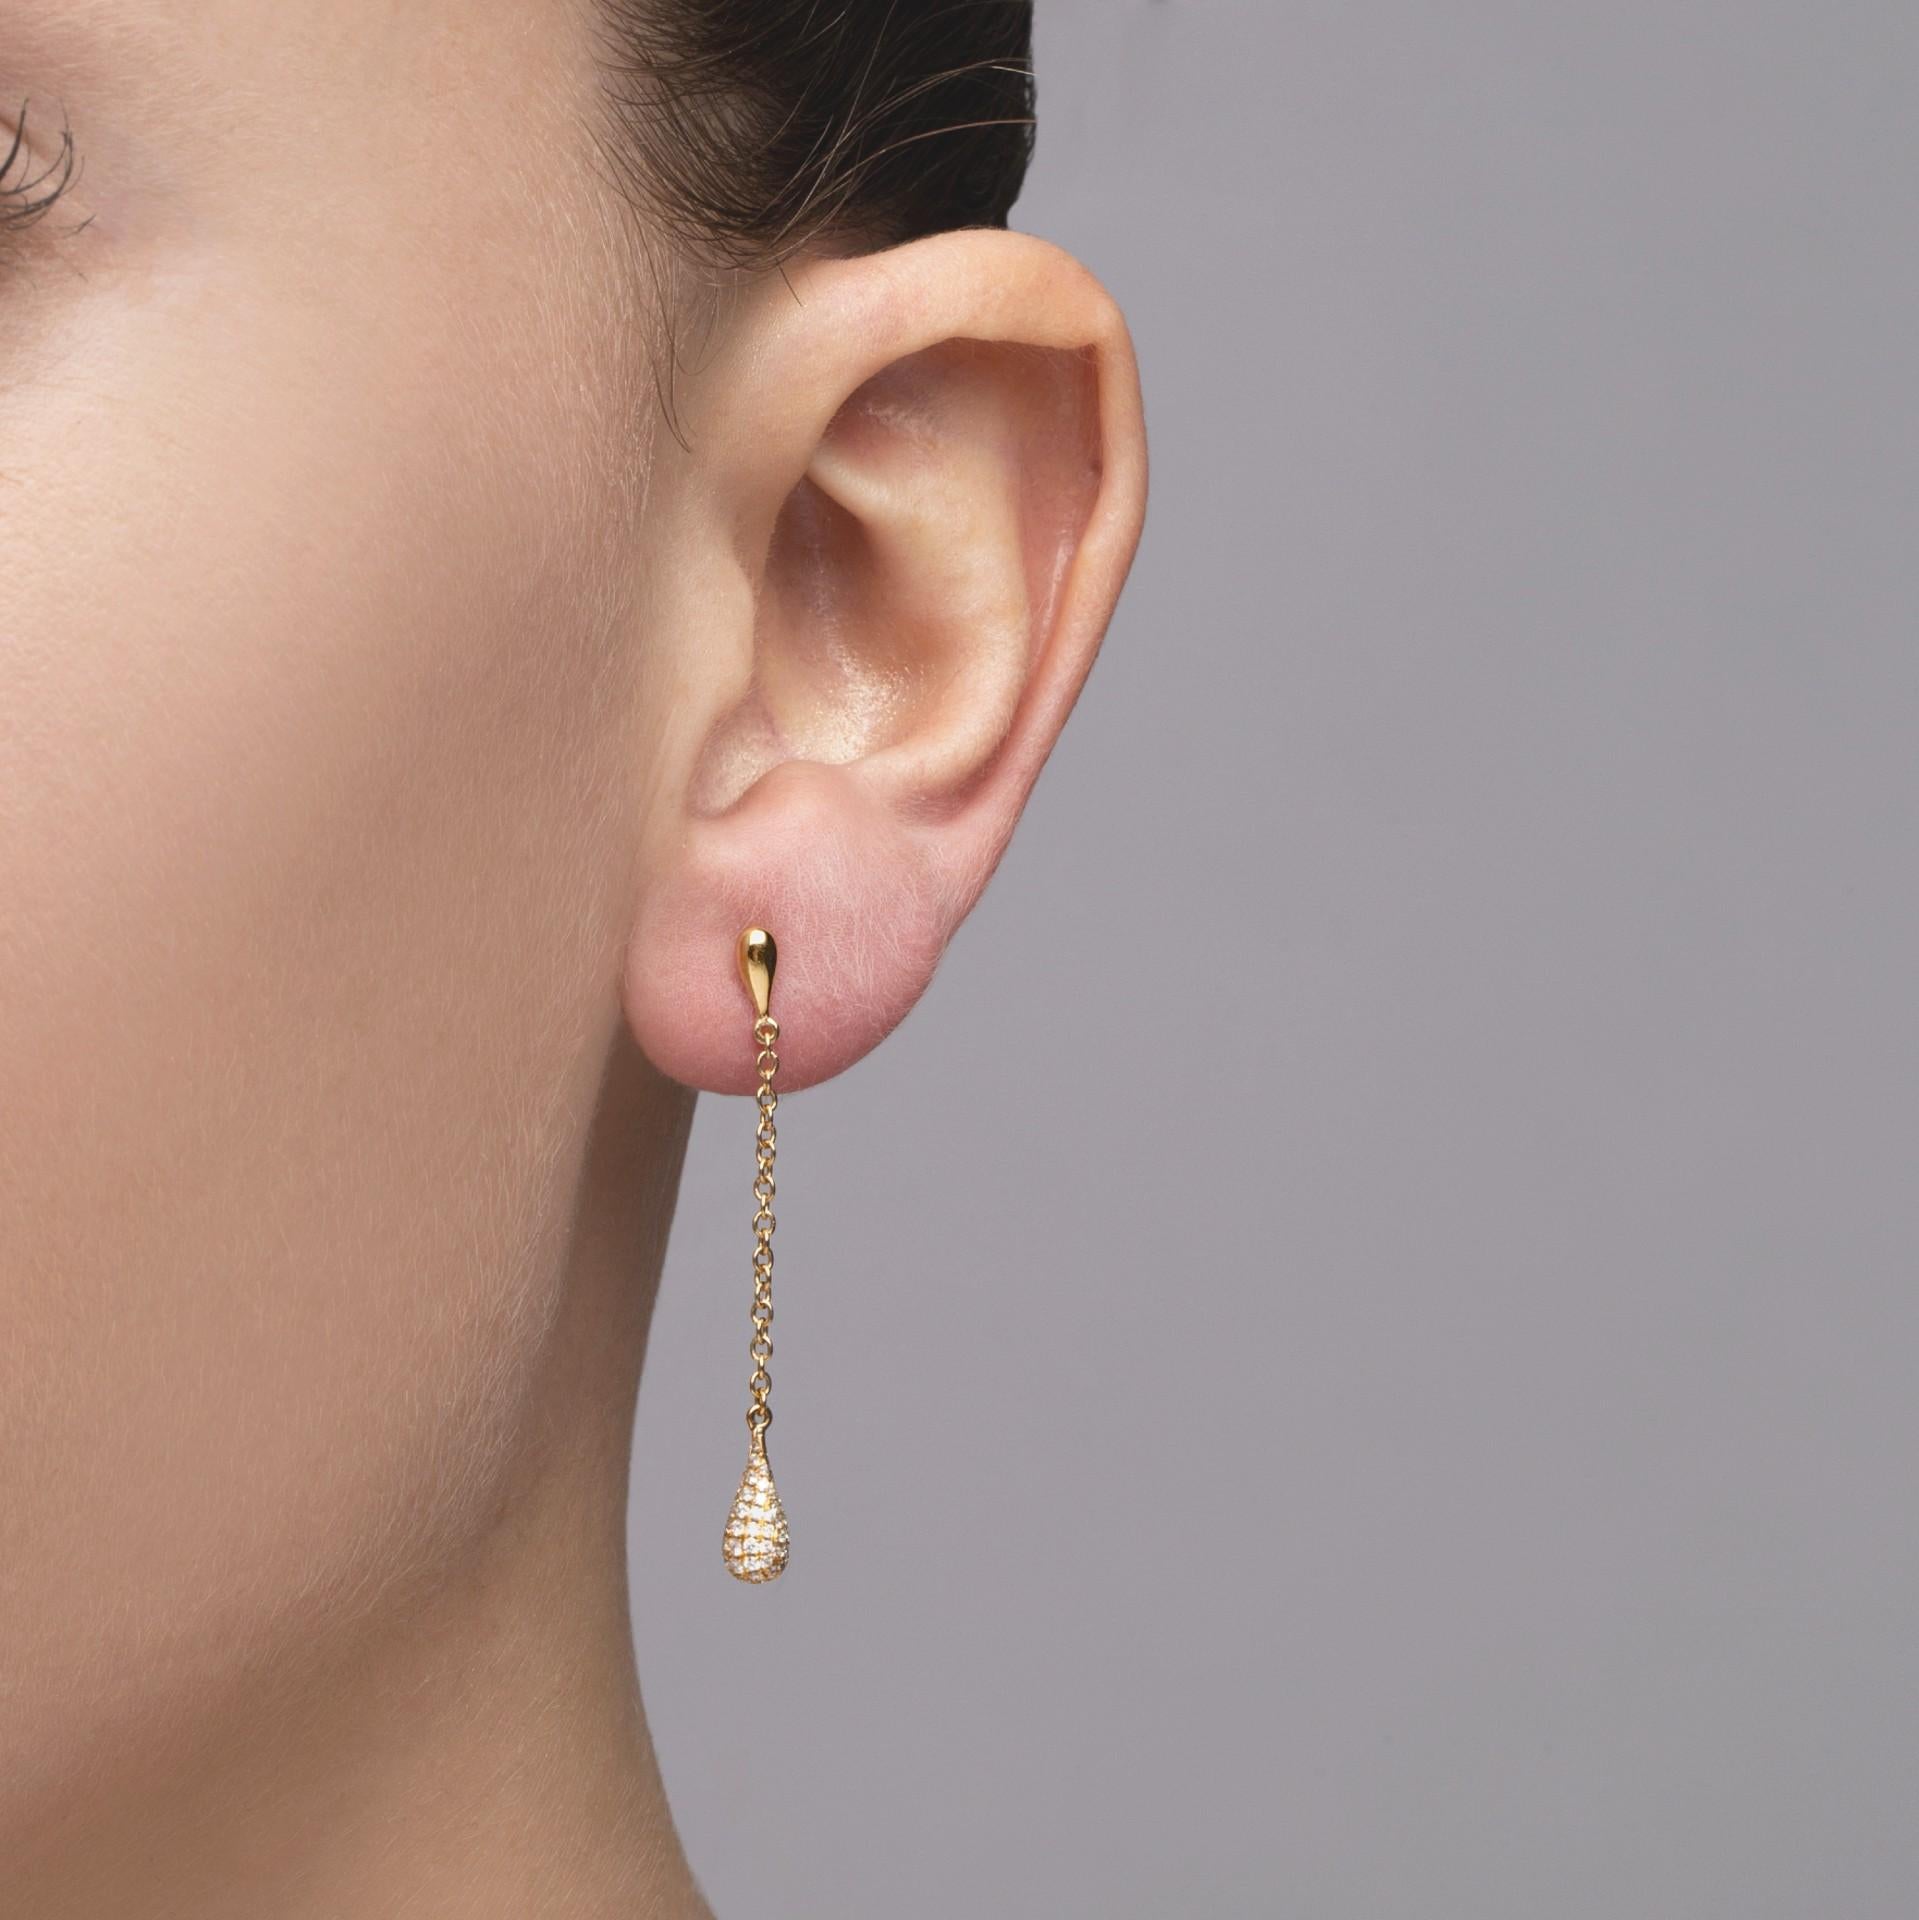 Alex Jona Design-Kollektion, handgefertigt in Italien, Ohrringe aus 18 Karat Gelbgold, besetzt mit 0,38 Karat weißen Diamanten (Farbe FG, Reinheit VS).

Die Juwelen von Alex Jona zeichnen sich nicht nur durch ihr besonderes Design und die